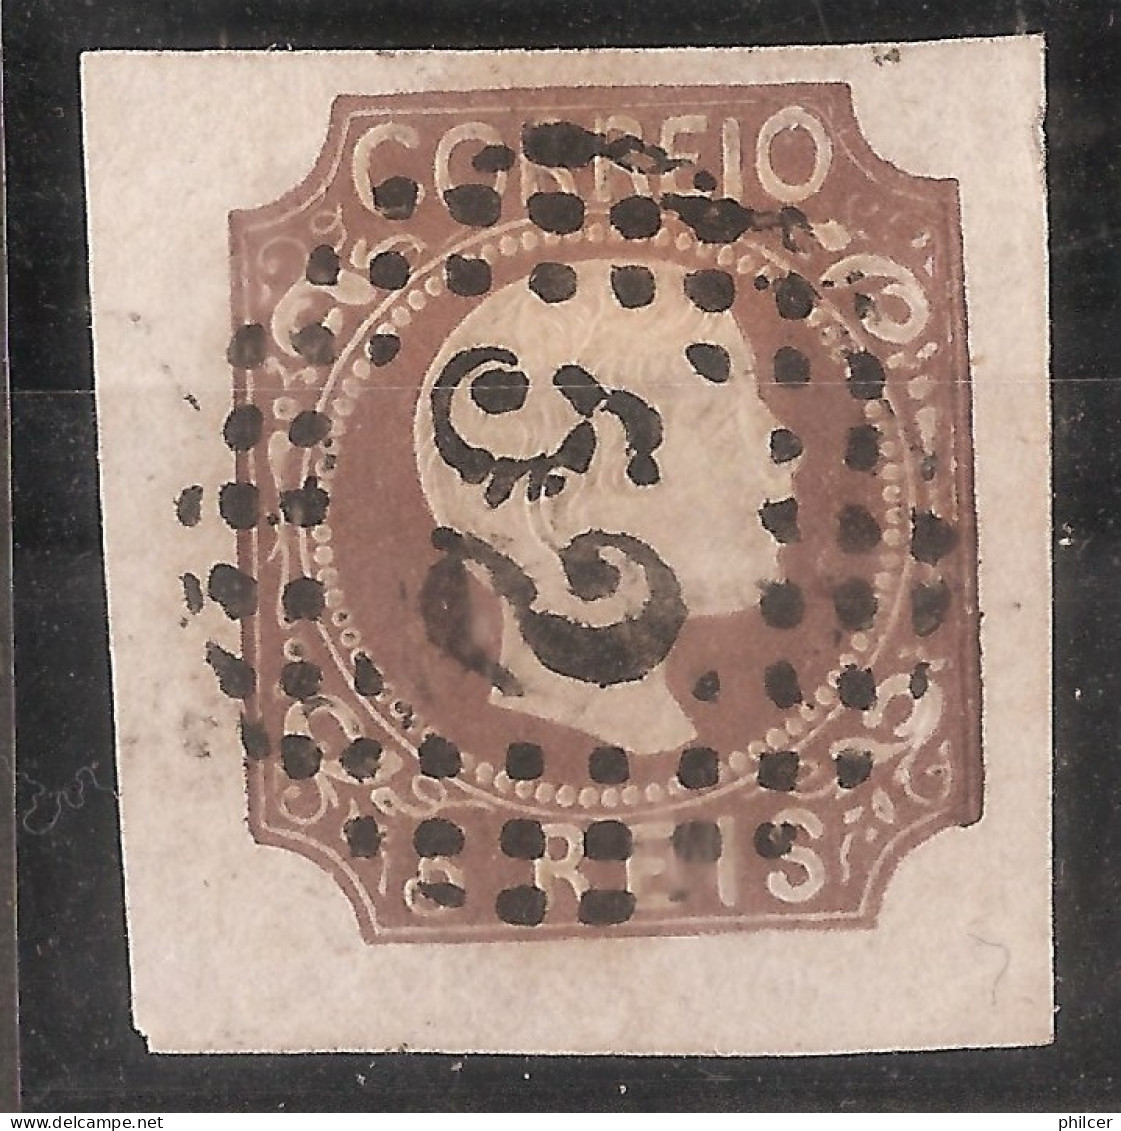 Portugal, 1856/8, # 10, Used - Gebruikt